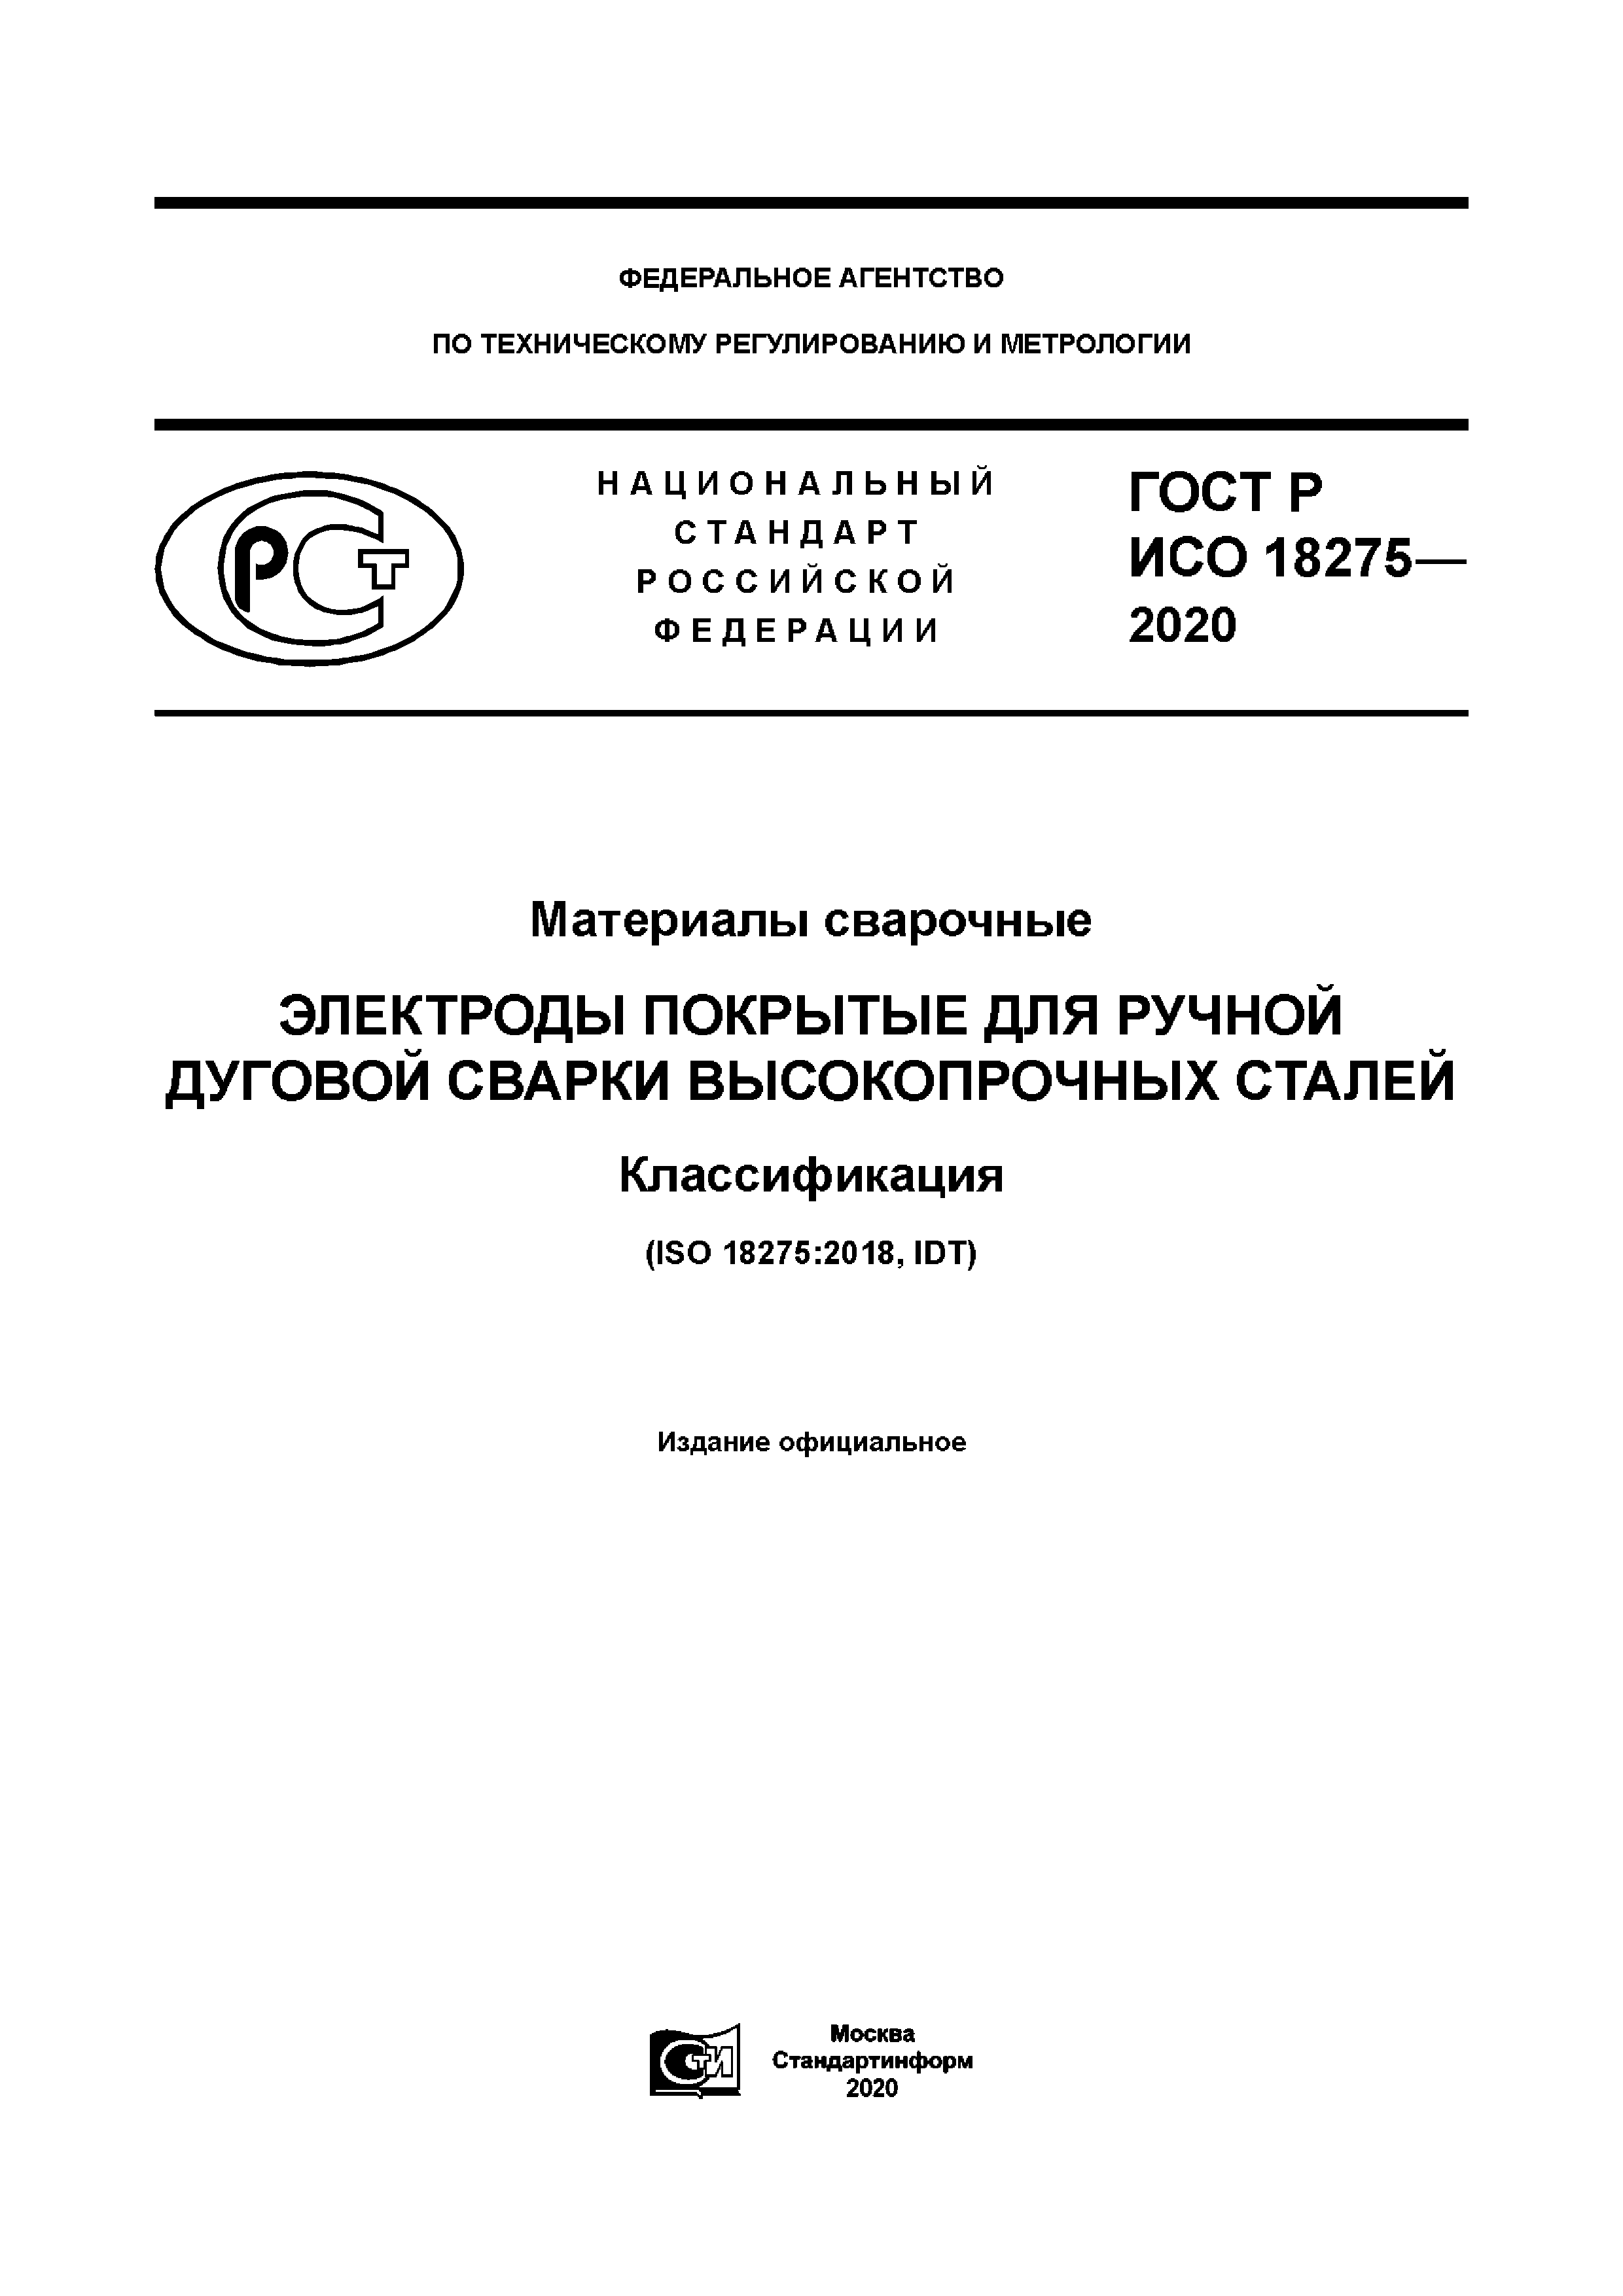 ГОСТ Р ИСО 18275-2020